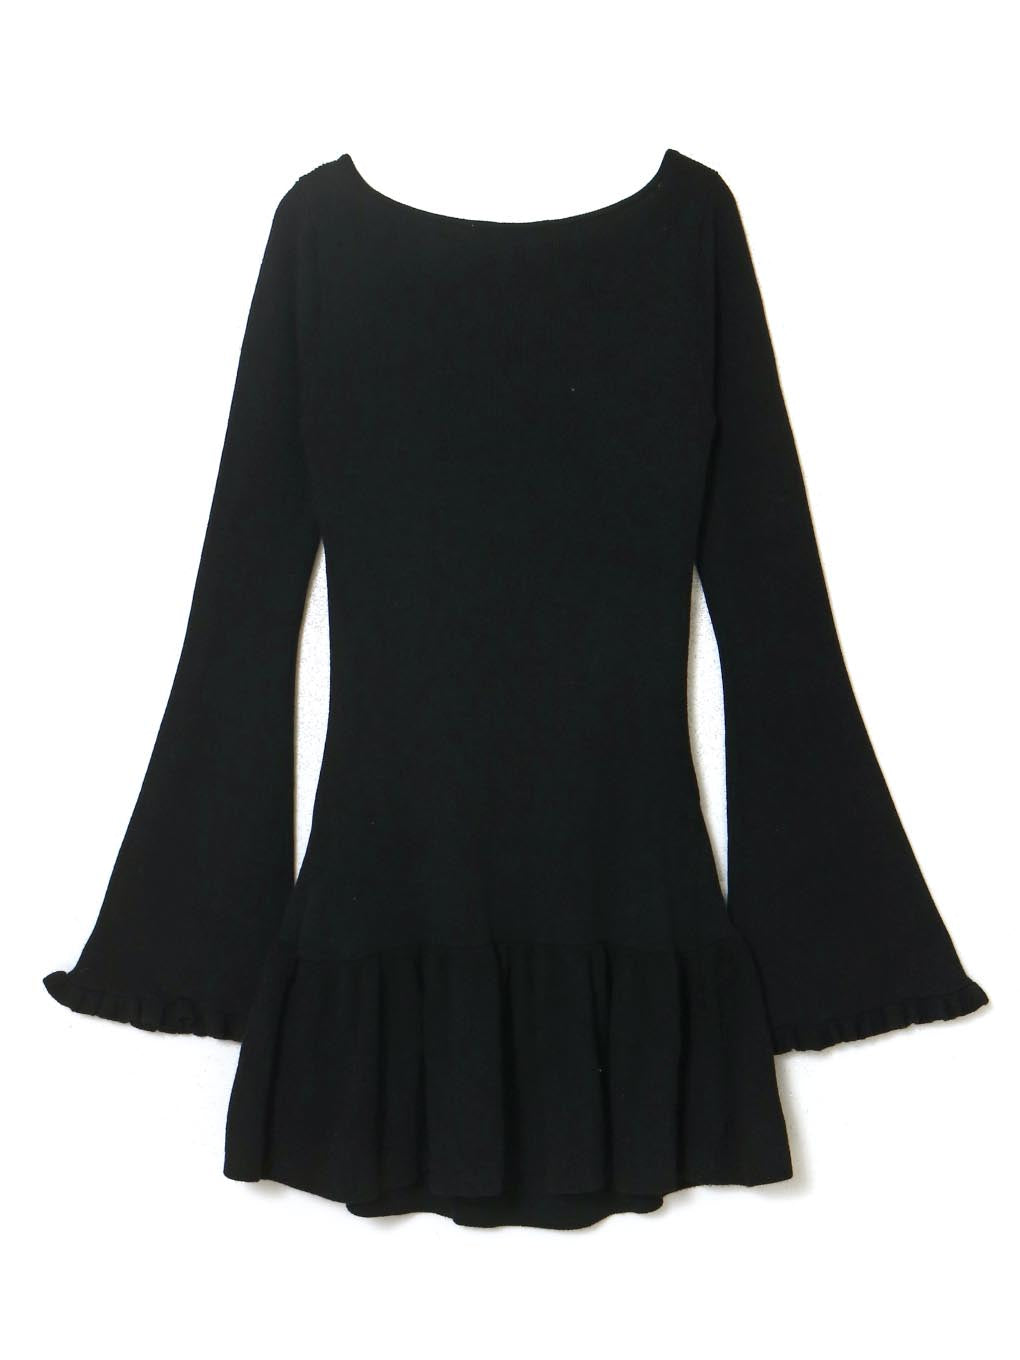 Andmary Fleur knit mini dress Black | www.gamutgallerympls.com